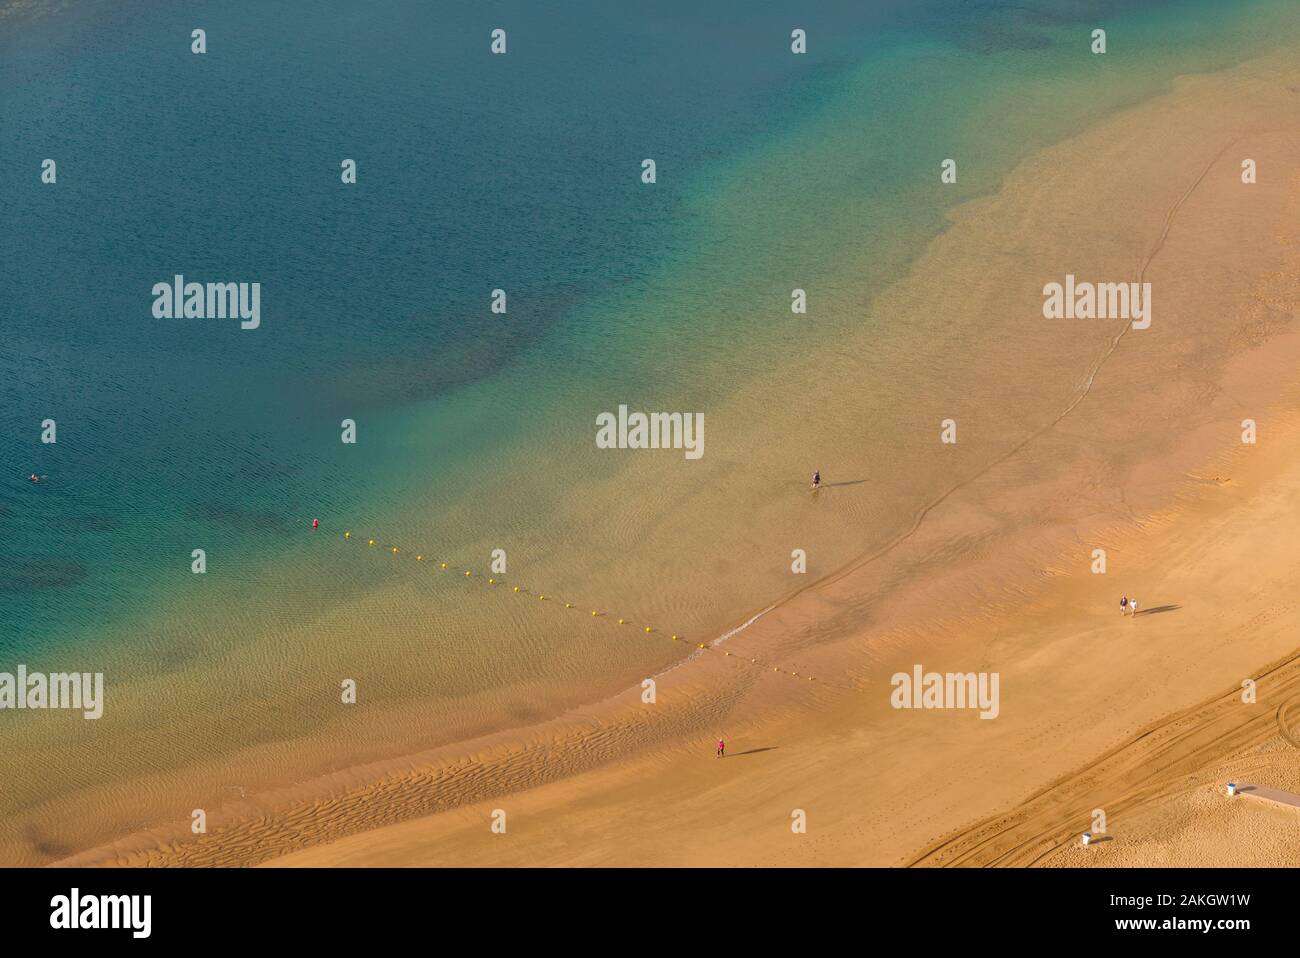 L'Espagne, Iles Canaries, Tenerife Island, San Andres, augmentation de la plage de San Andres, couvert de sable importé du désert du Sahara Banque D'Images